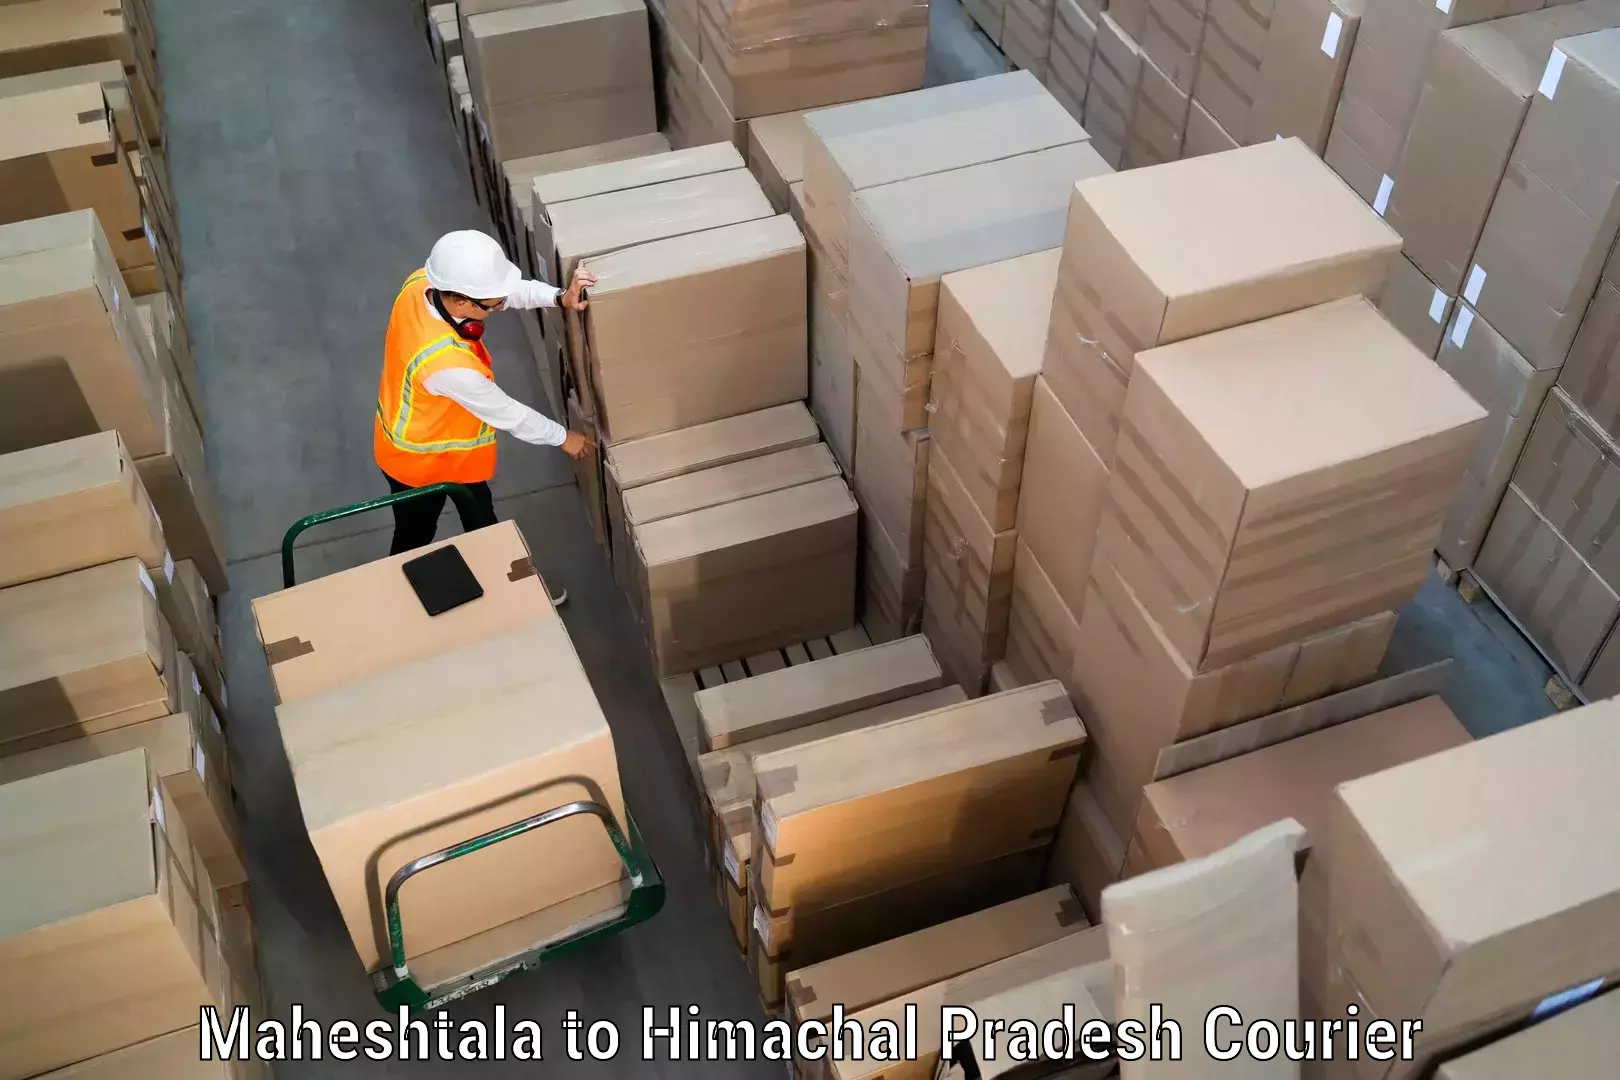 Lightweight parcel options Maheshtala to Jukhala